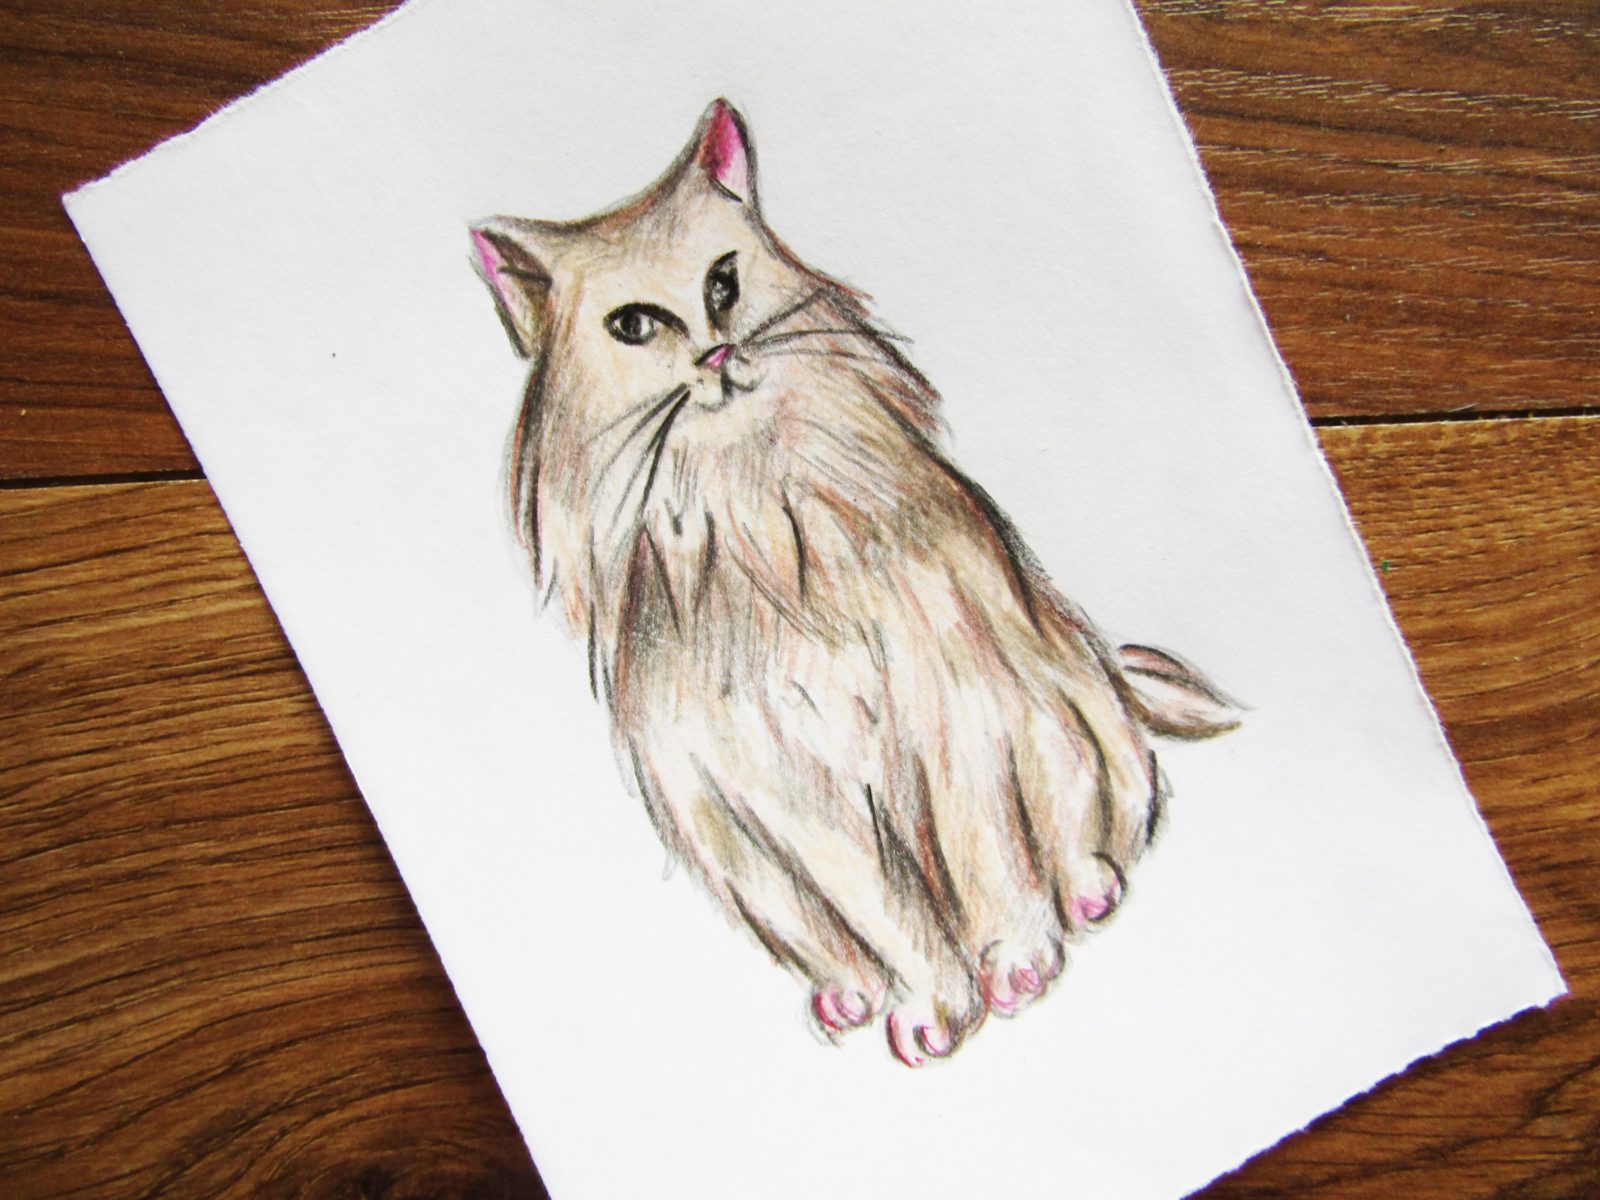 Как нарисовать кошку породы Мейн-кун